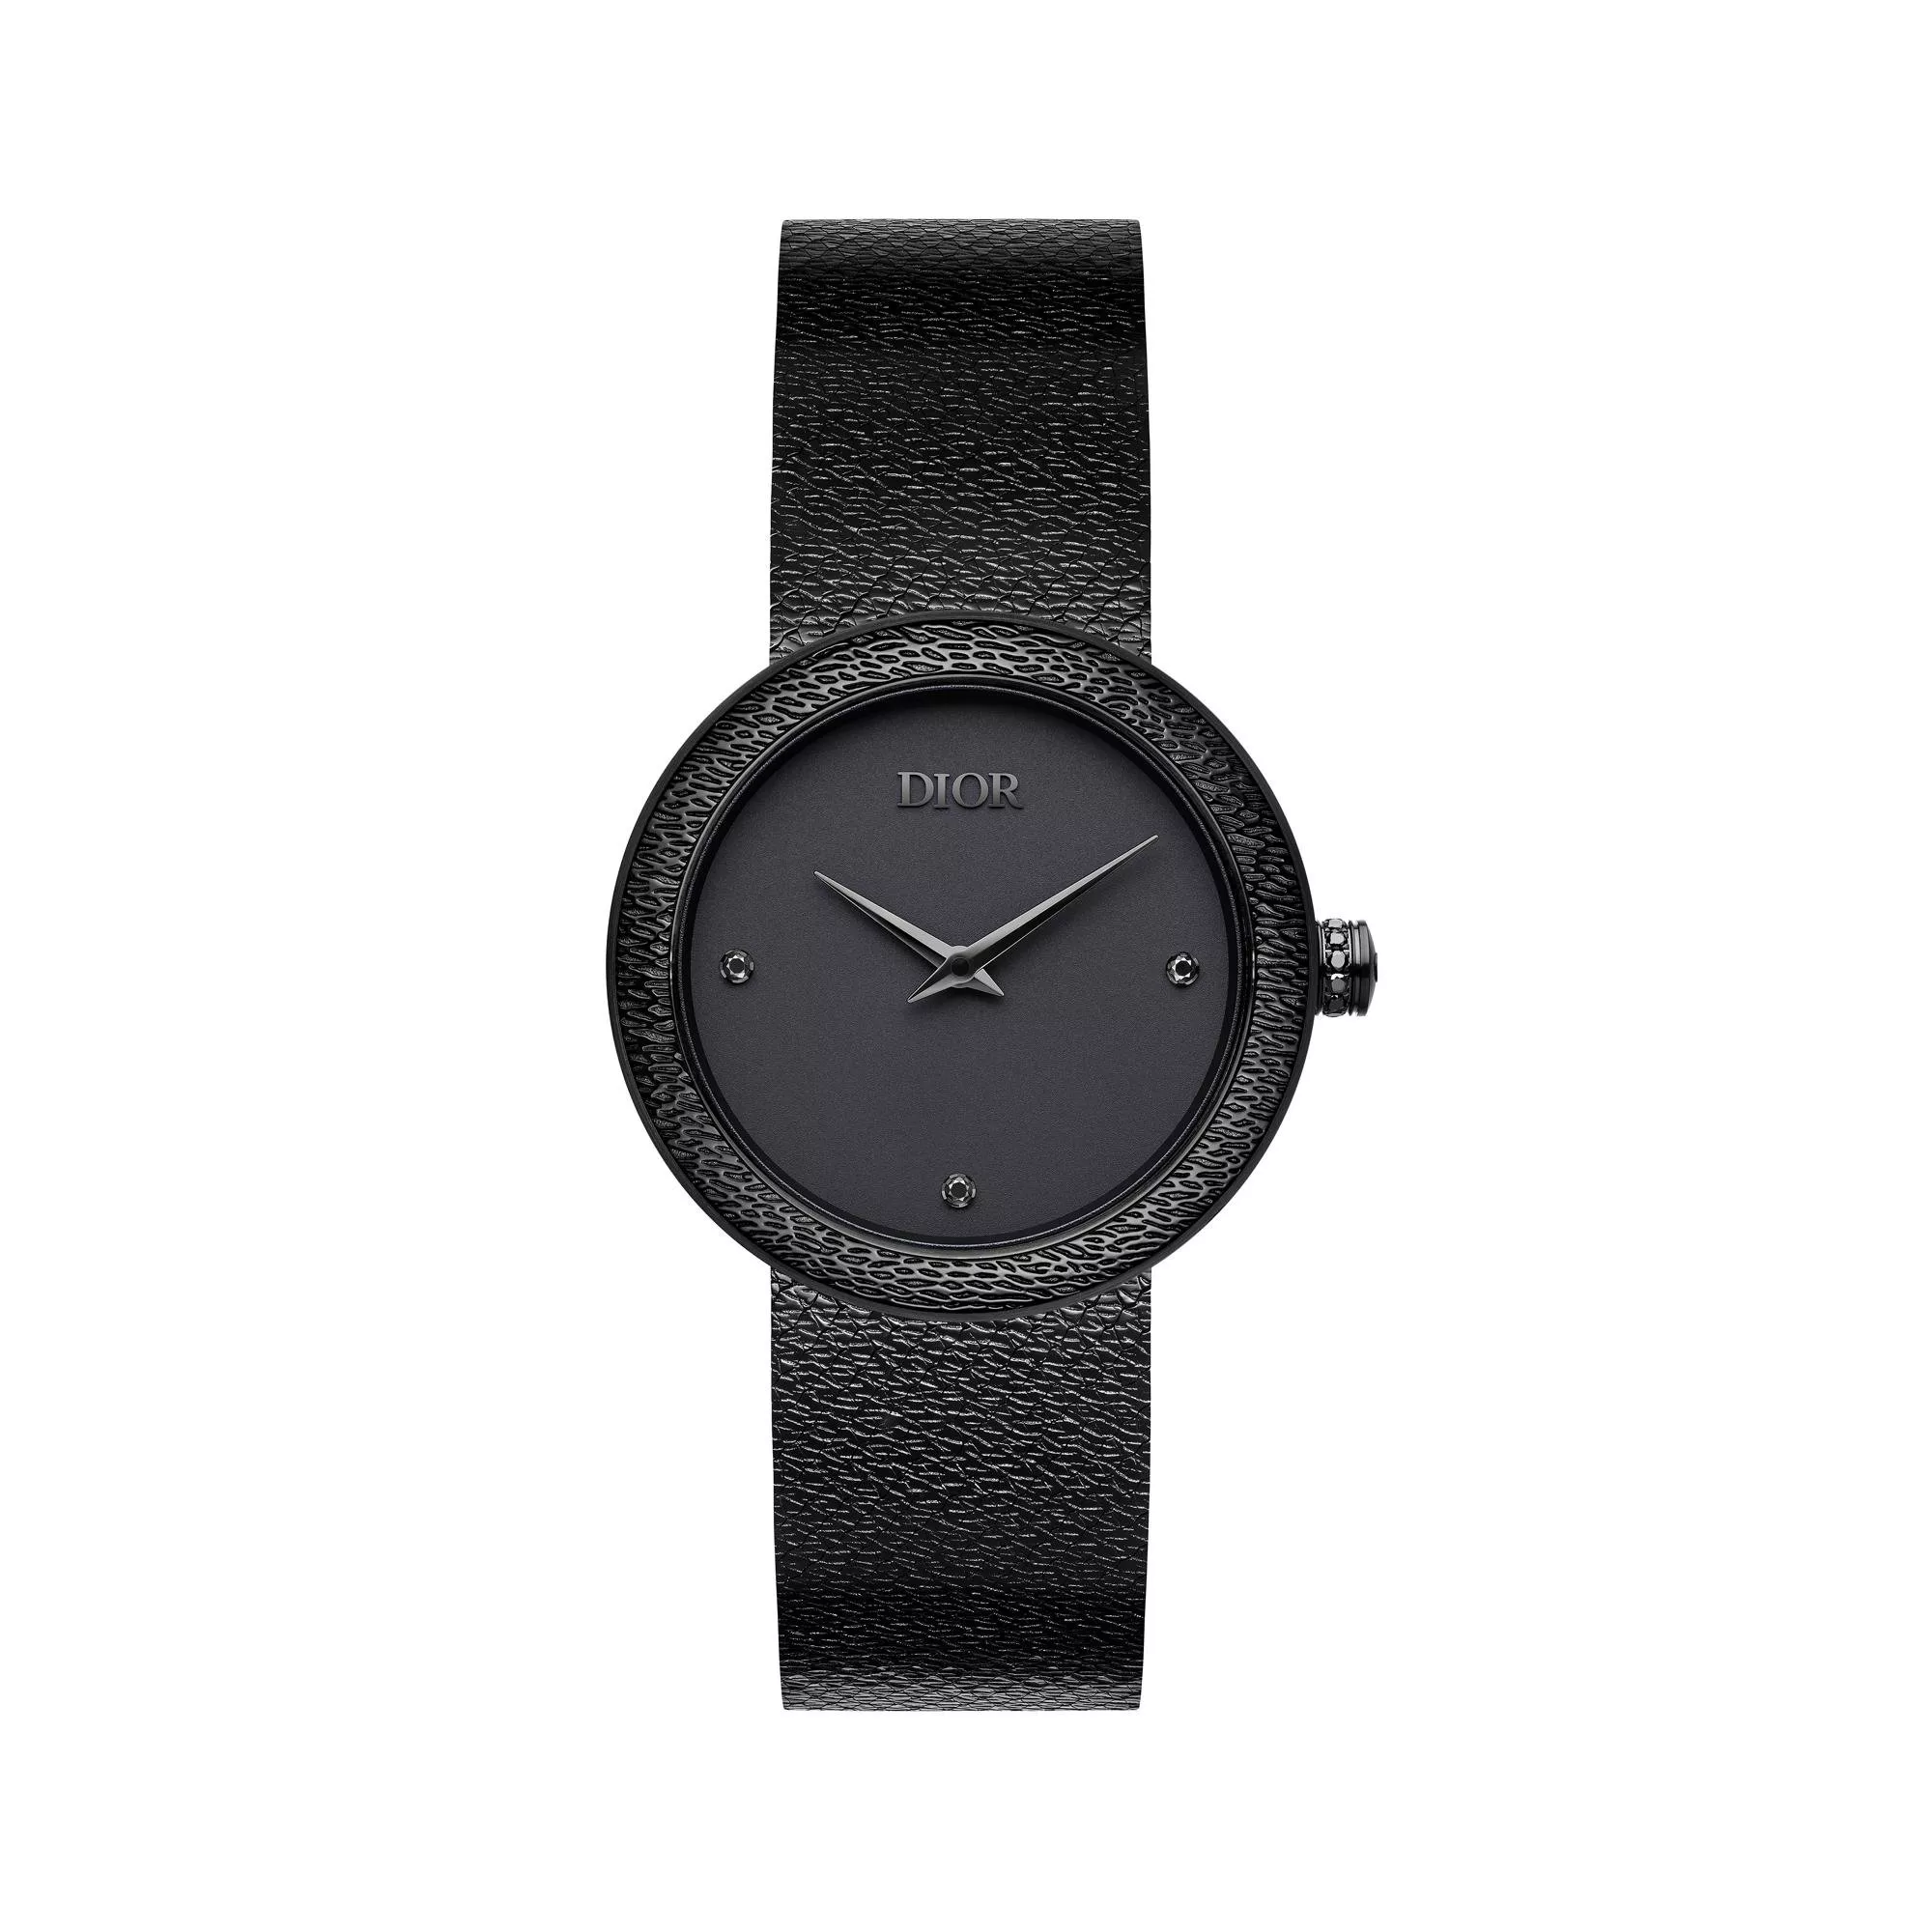 ديور تطلق ساعة La D de Dior باللون الأسود الفحمي غير اللامع